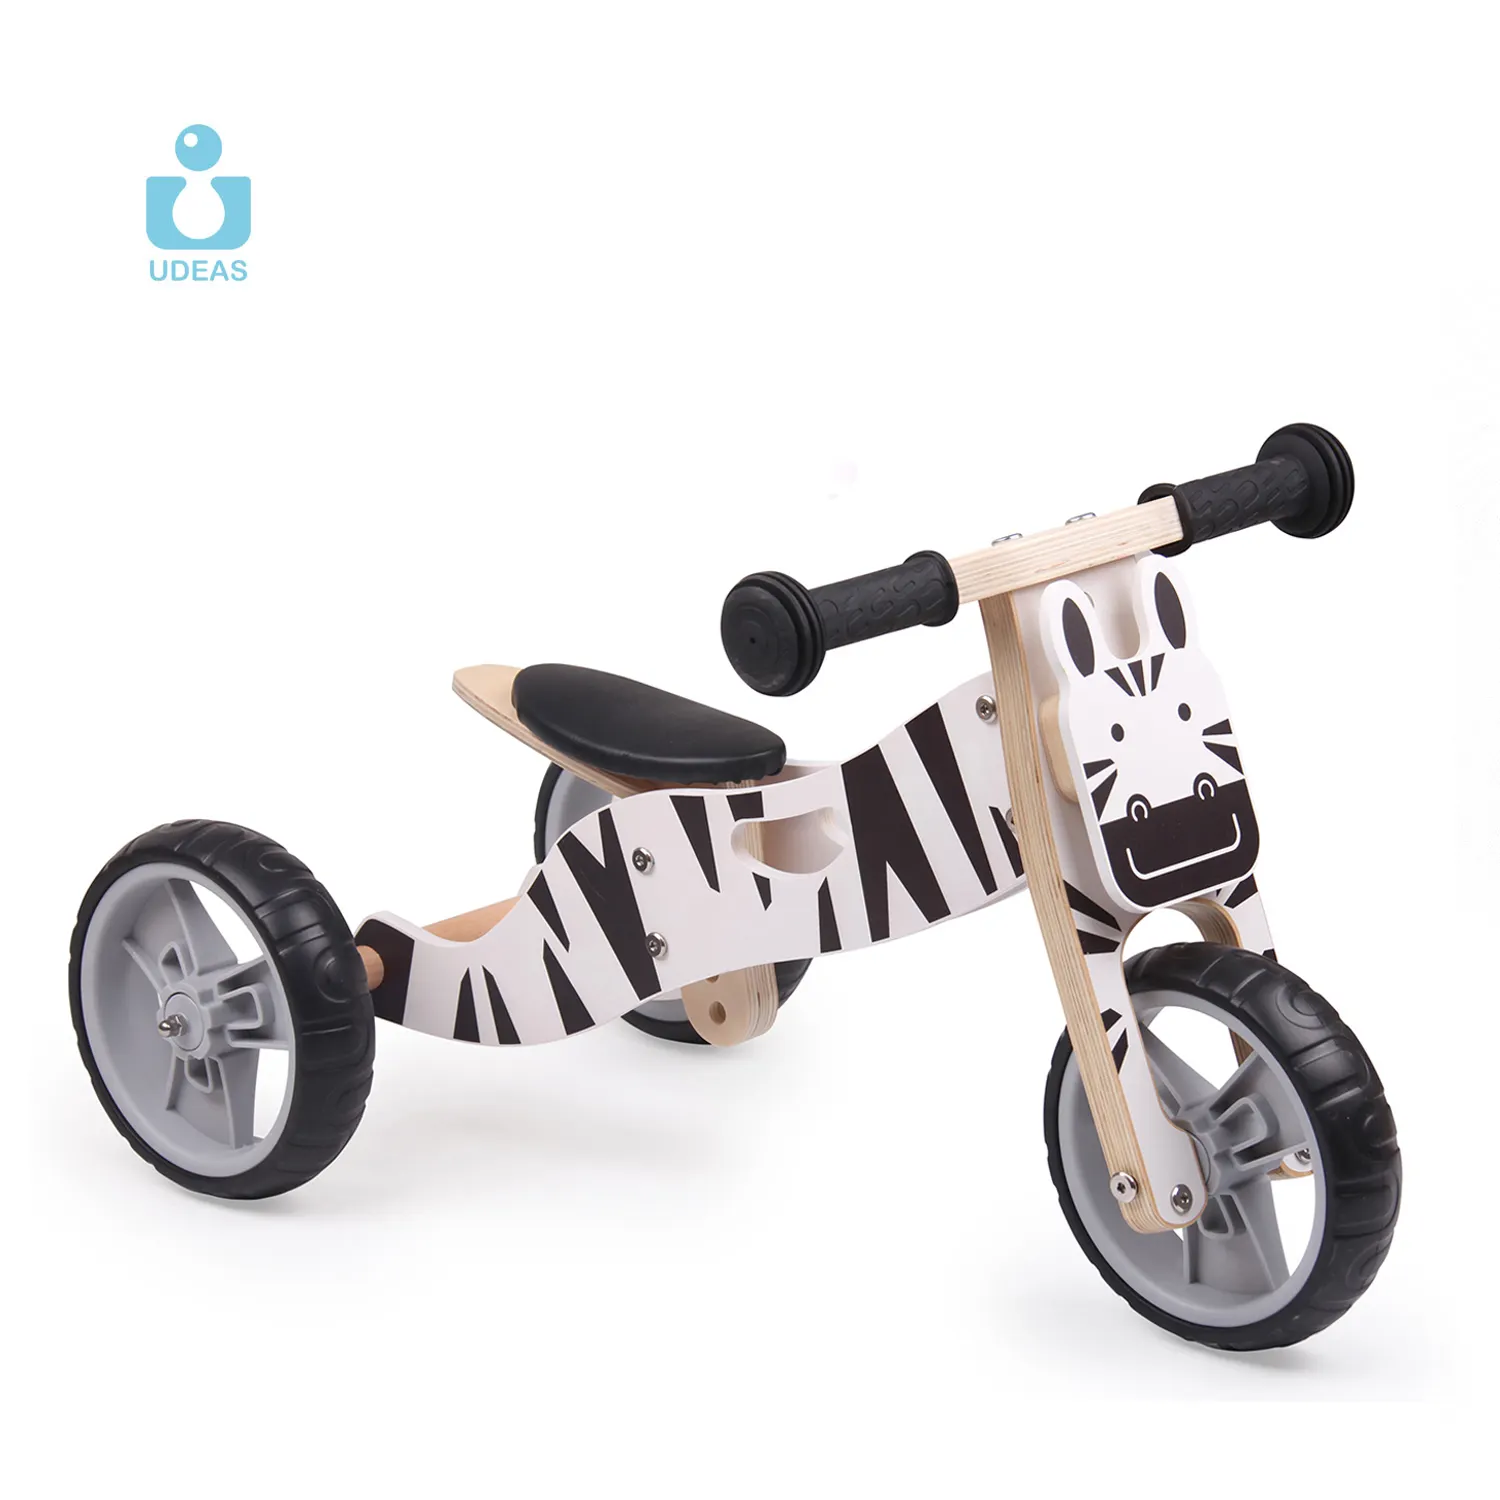 UDEAS จักรยานสมดุลแนวเรโทรสำหรับเด็ก,รถจักรยานขนาดเล็ก